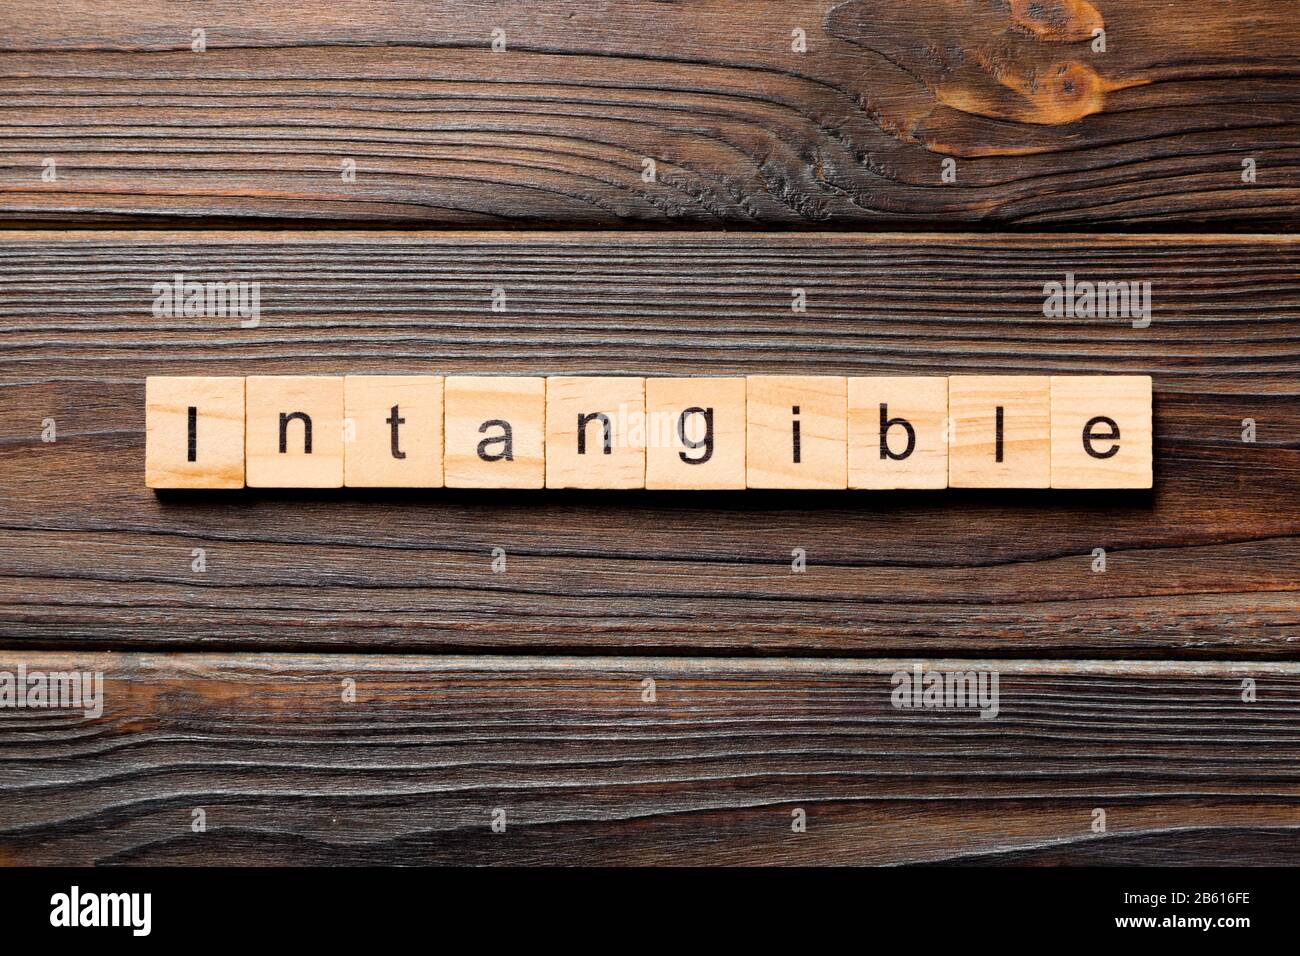 Immateriali di parola scritta sul blocco di legno. immateriali di testo sul tavolo in legno per il desing, concetto. Foto Stock